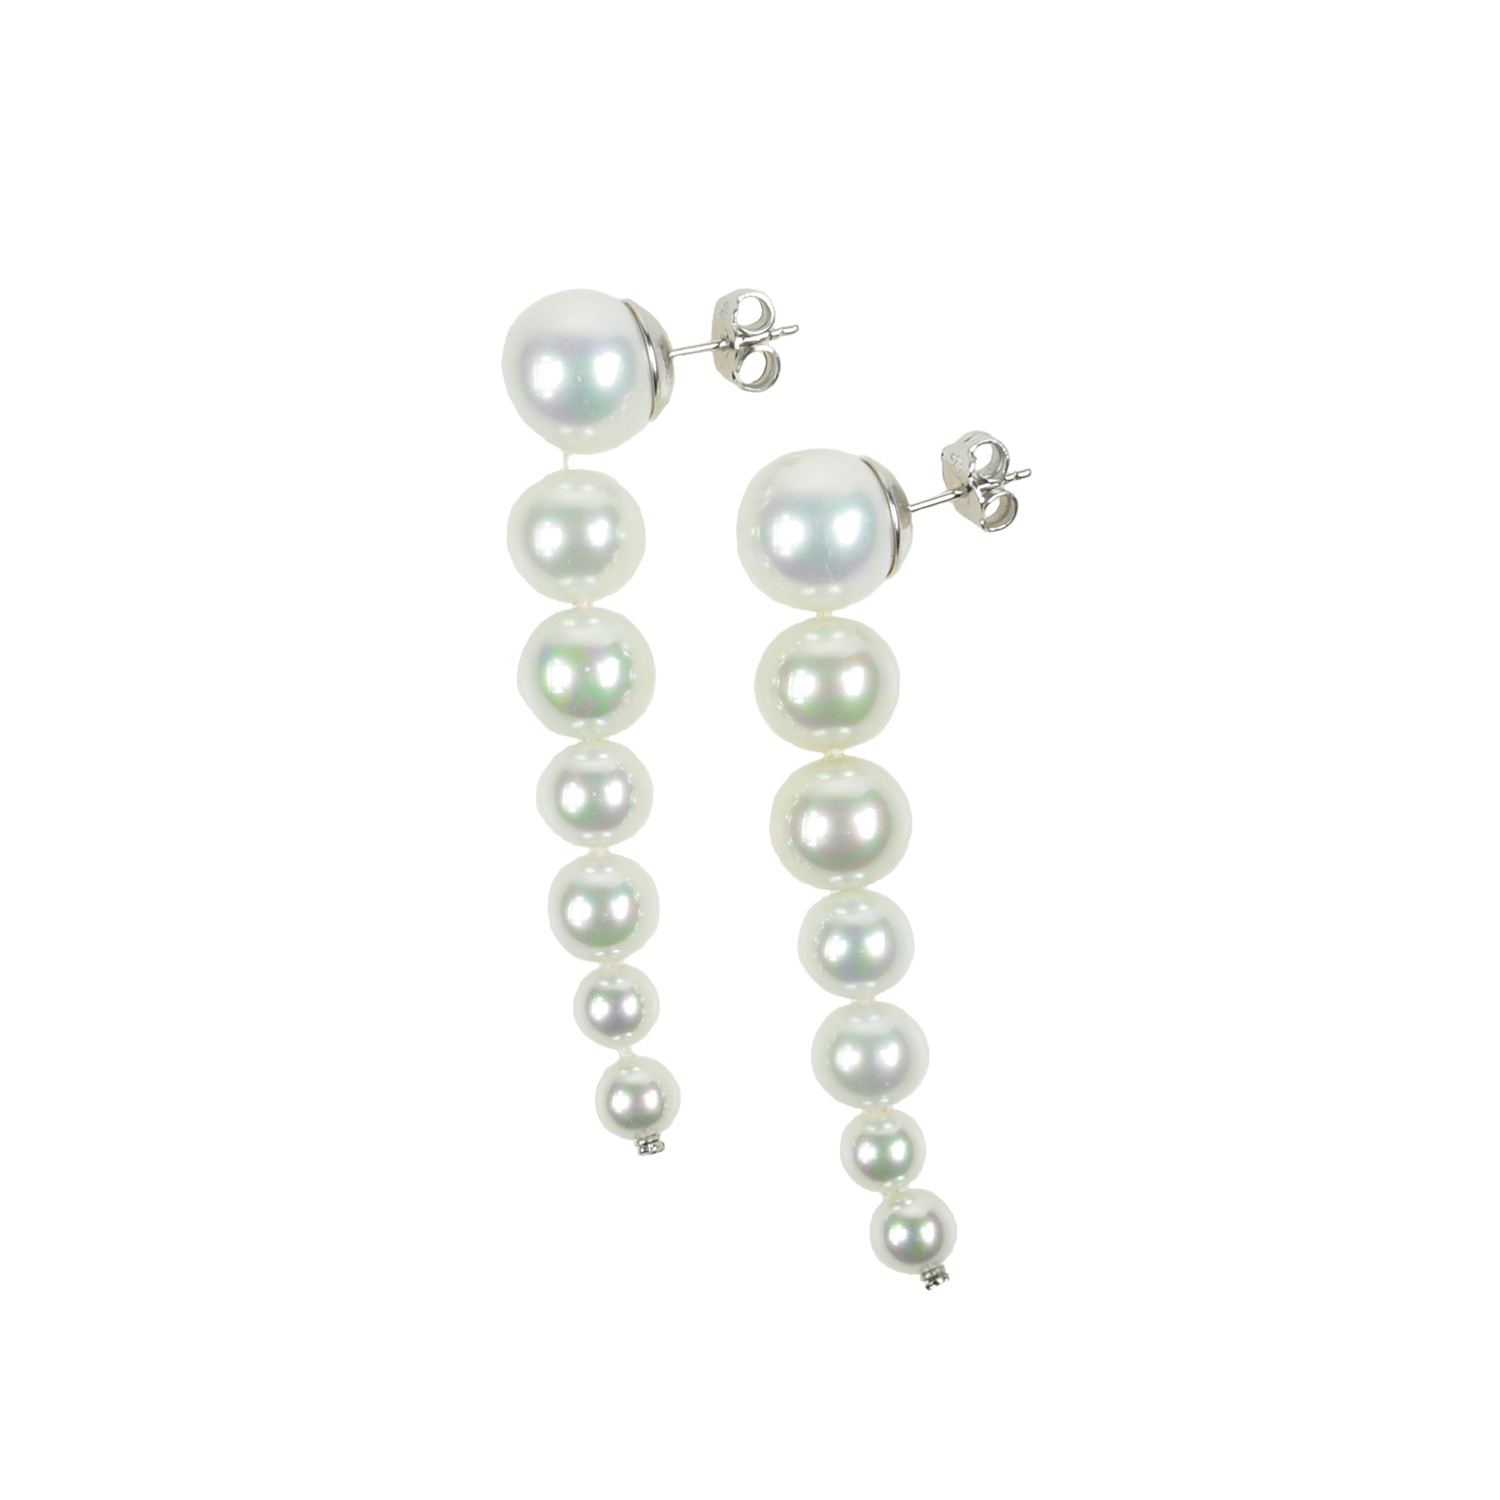 Klassische Ohrringe mit abfgestuften weissen Perlen.